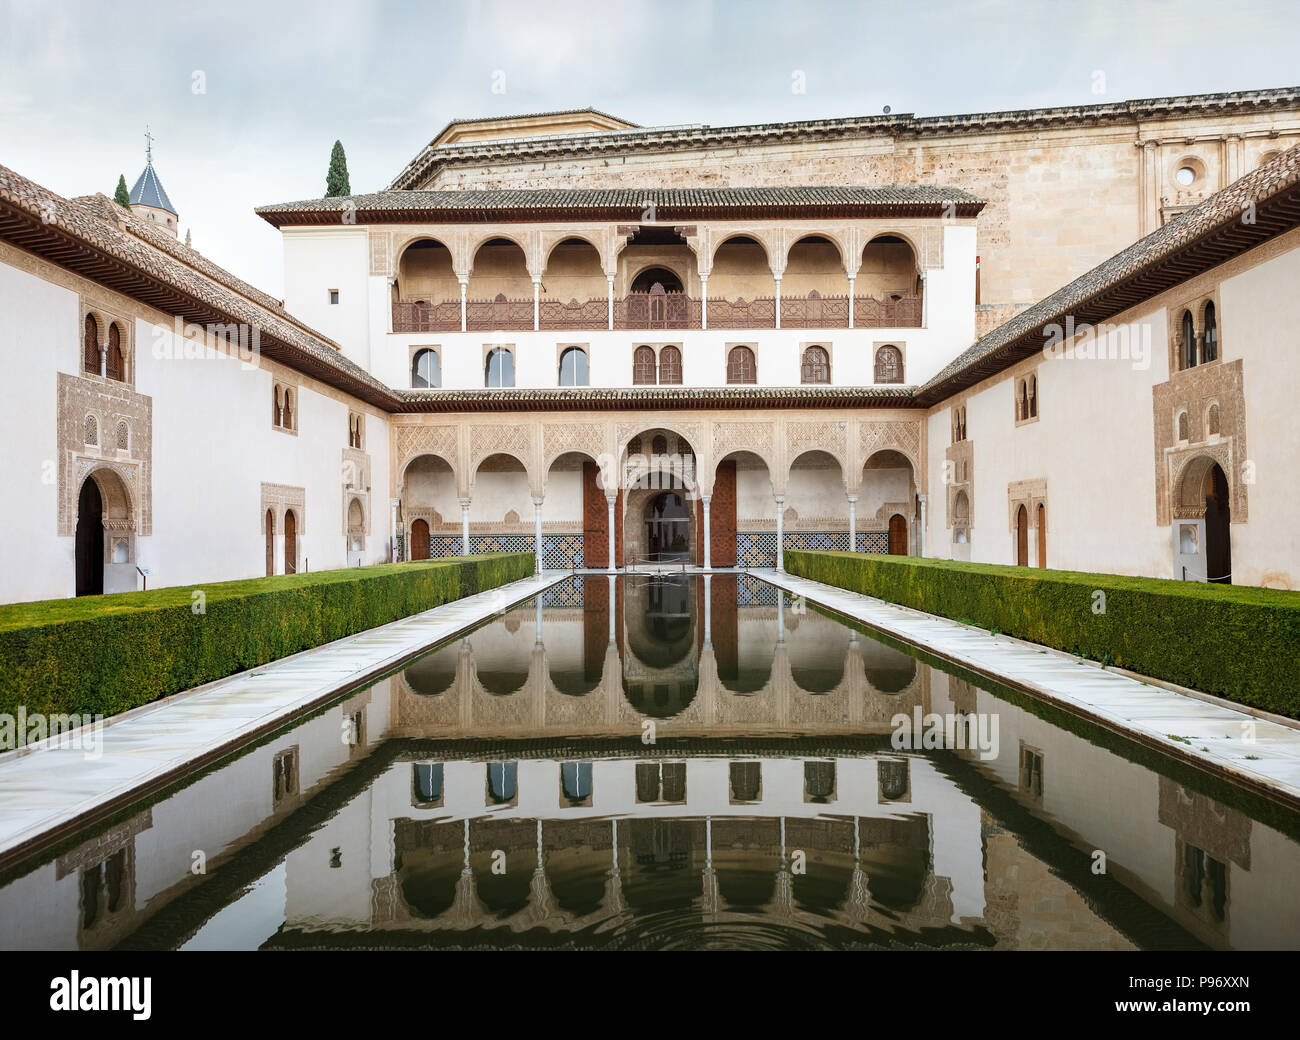 Das Gericht des Myrthen ohne Menschen. Alhambra in Granada, Andalusien, Spanien Stockfoto